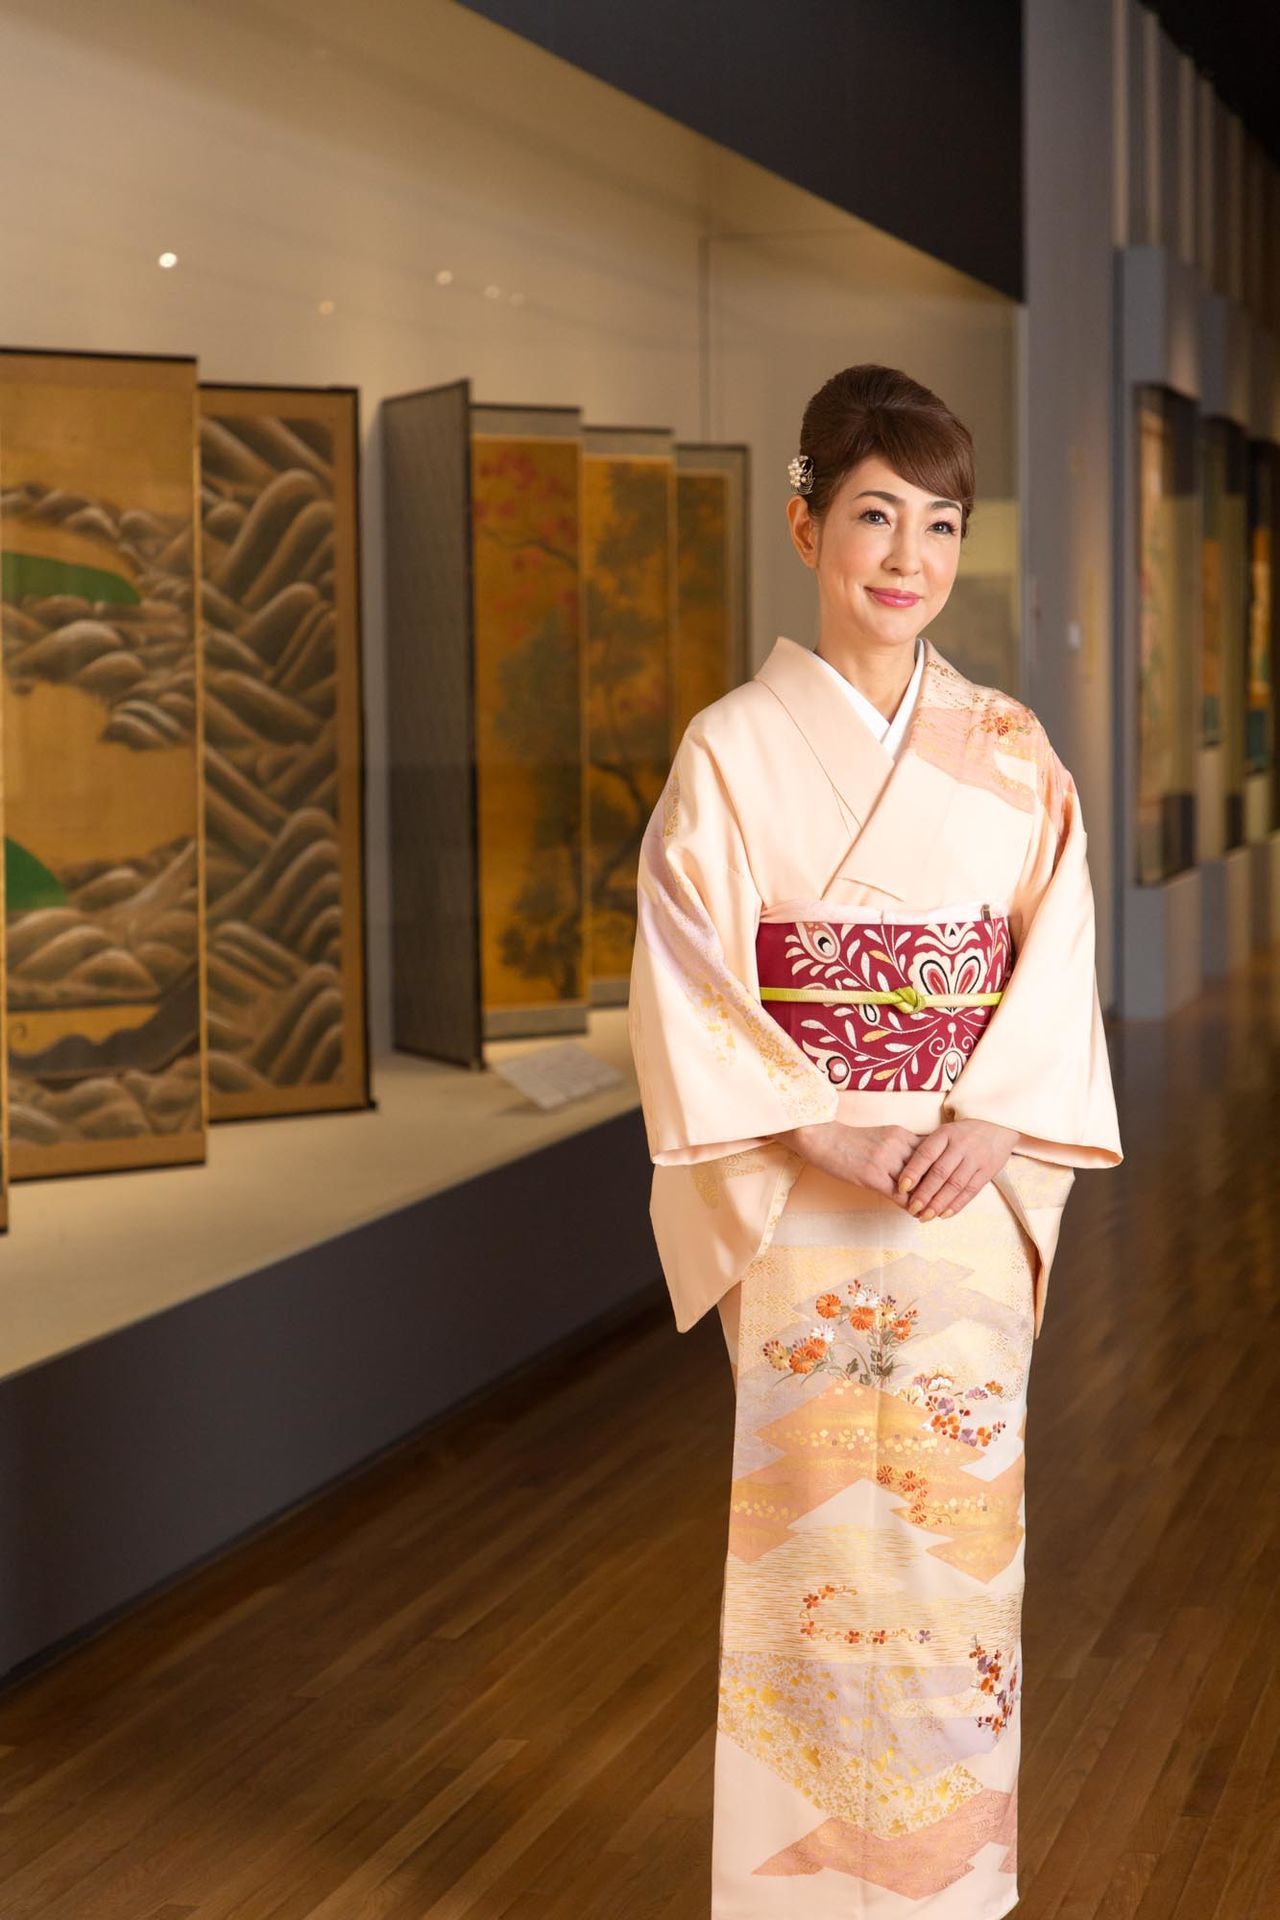 غالباً ما ترتدي يامازاكي الزي التقليدي في التجمعات العامة.